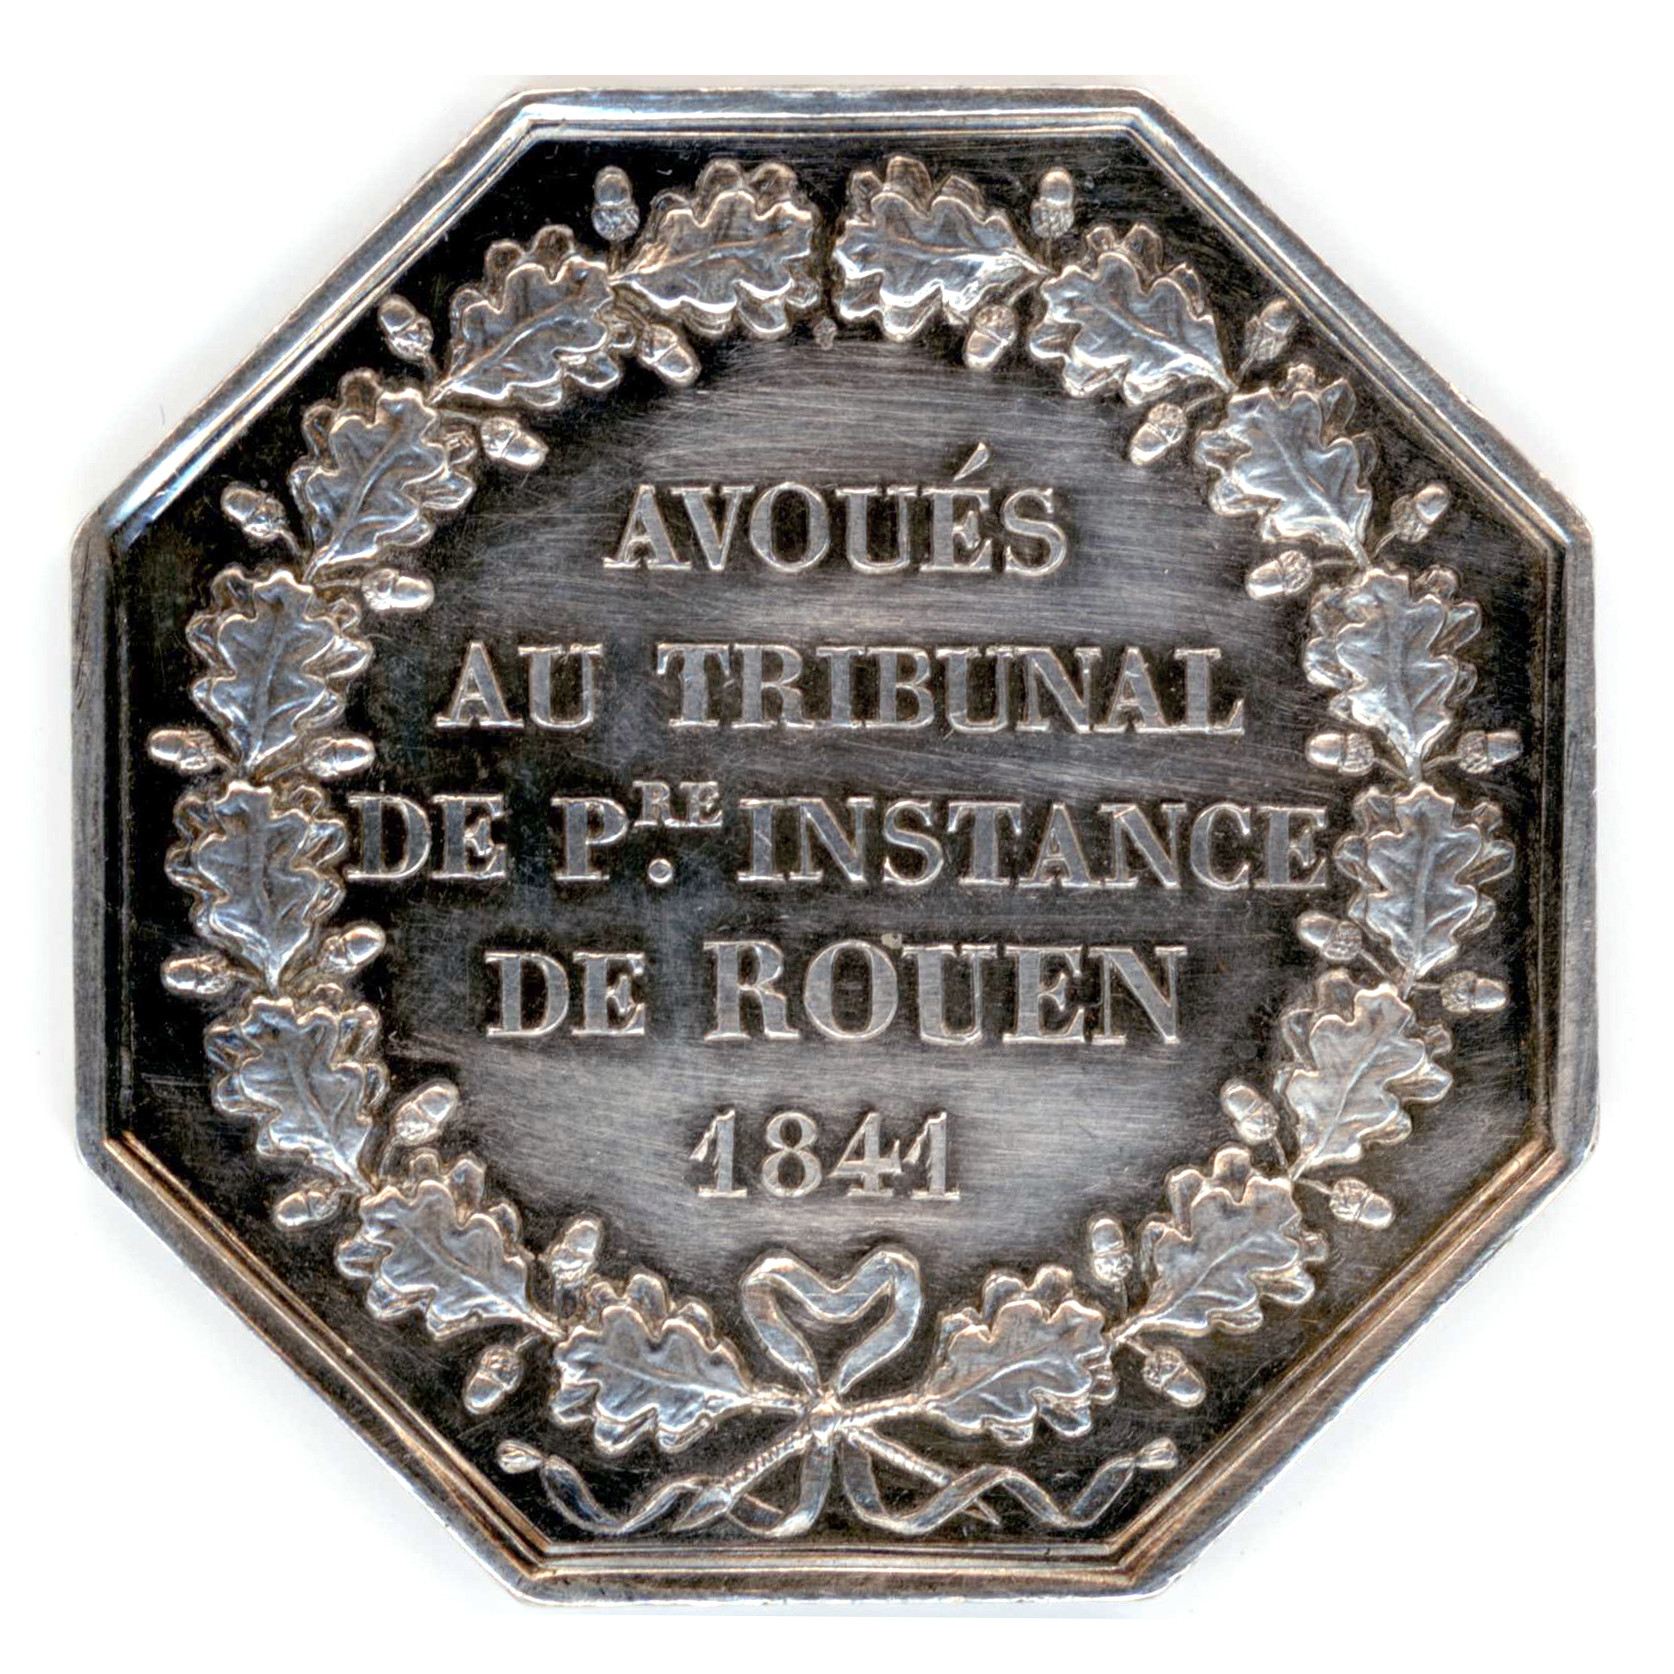 Jeton - Avoués de Rouen - 1841 revers